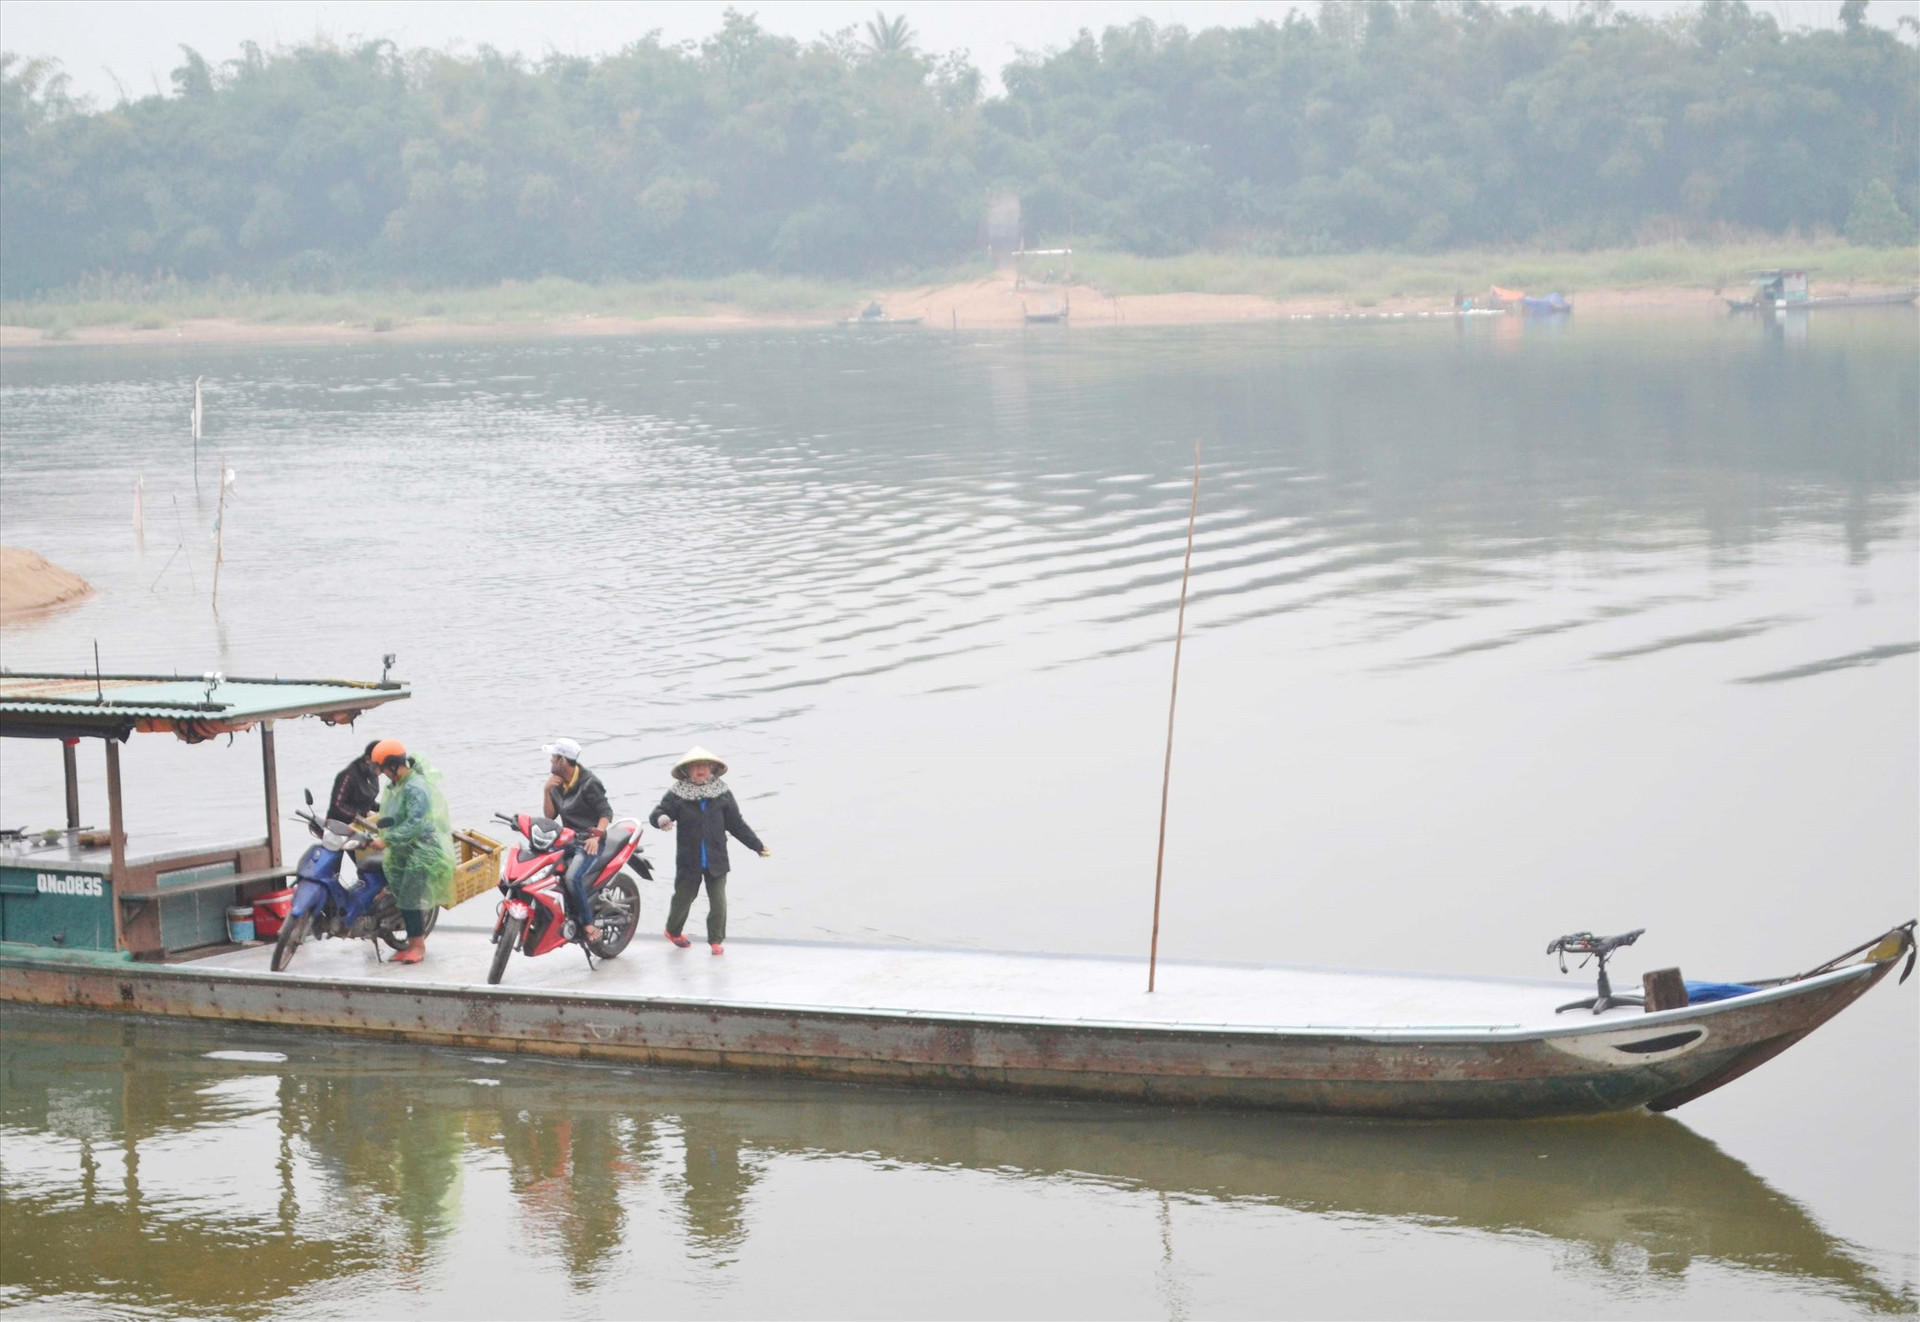 Vận chuyển khách ngang sông trên bến đò Duy Tân (Duy Xuyên) - Phú Thuận (Đại Lộc). Ảnh: C.T